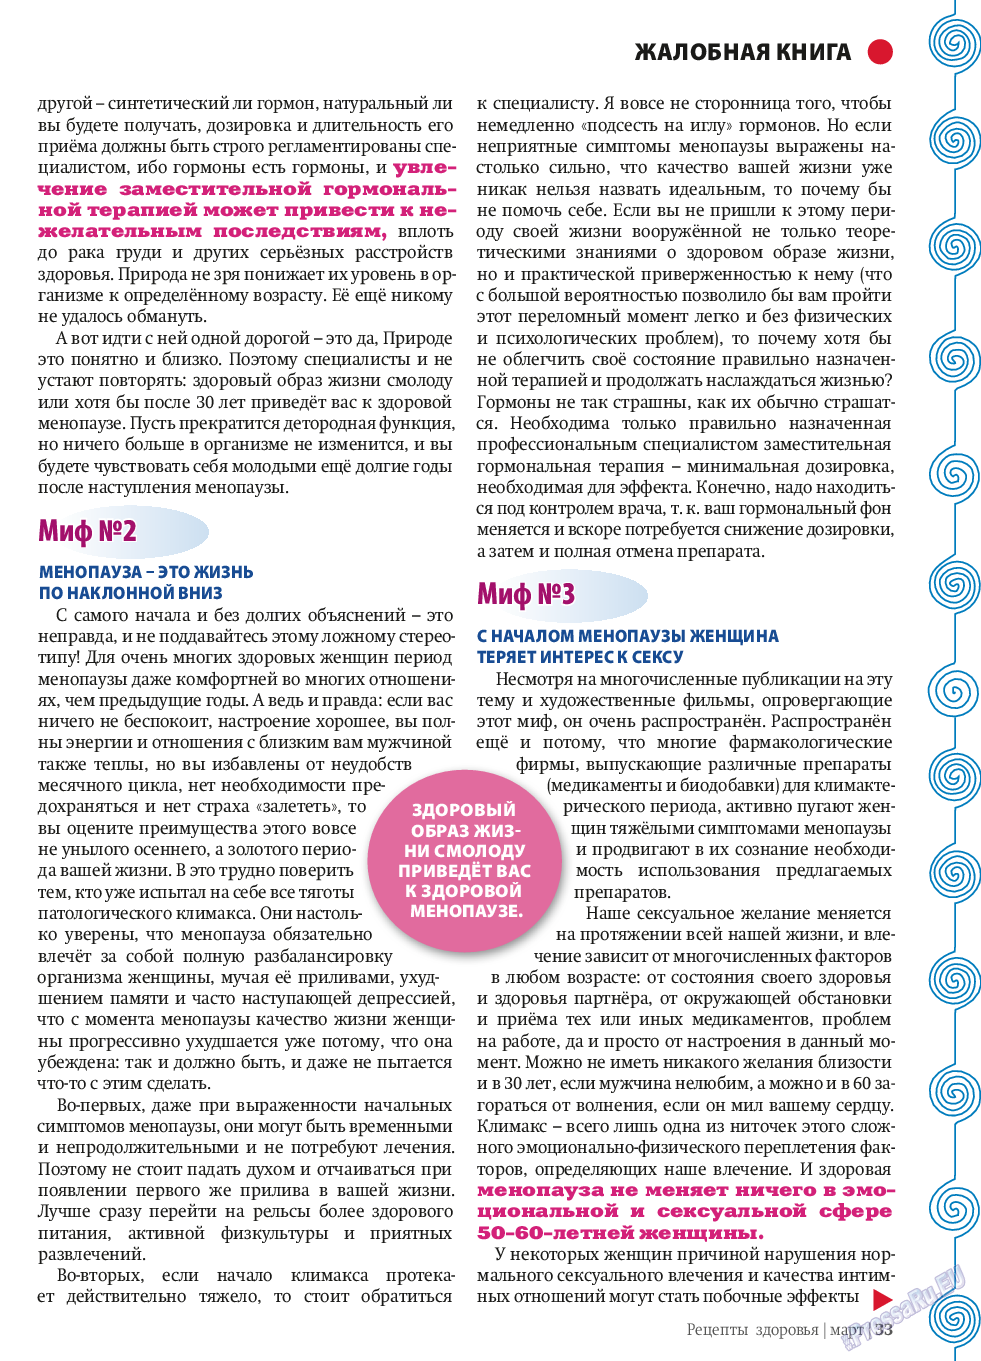 Рецепты здоровья, журнал. 2014 №58 стр.33